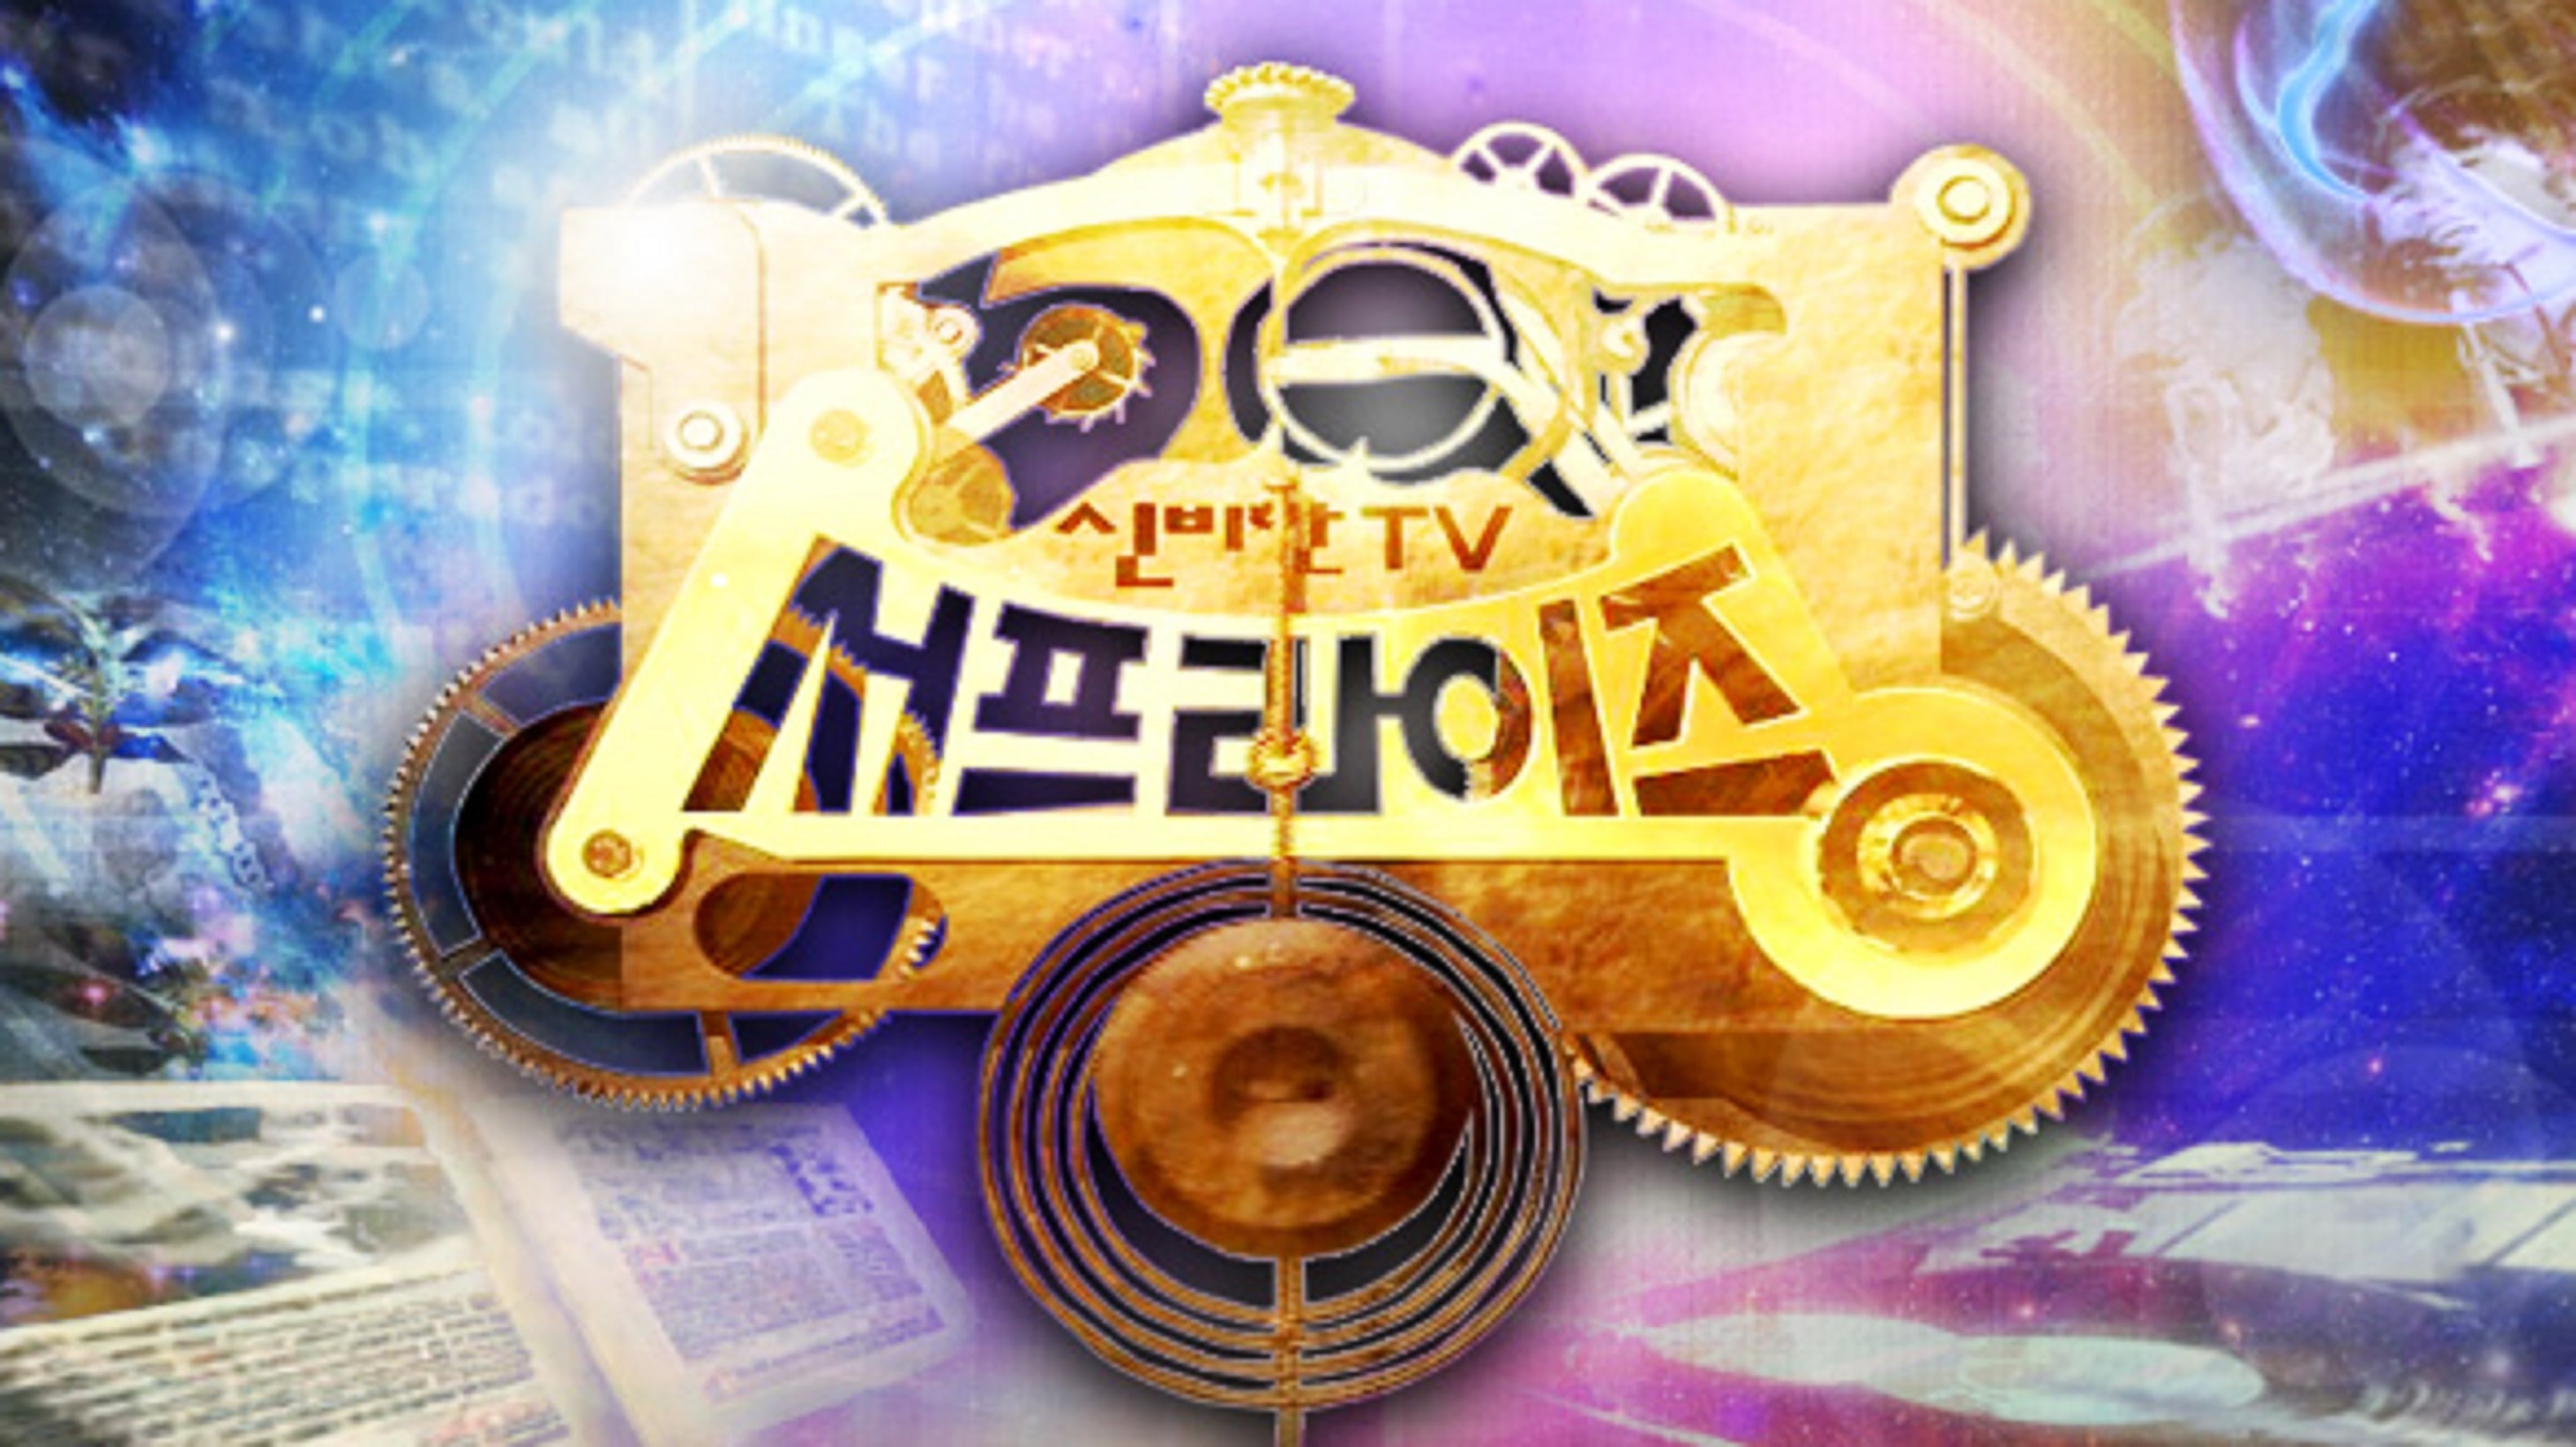 신비한 TV 서프라이즈 - Season 1 Episode 1011